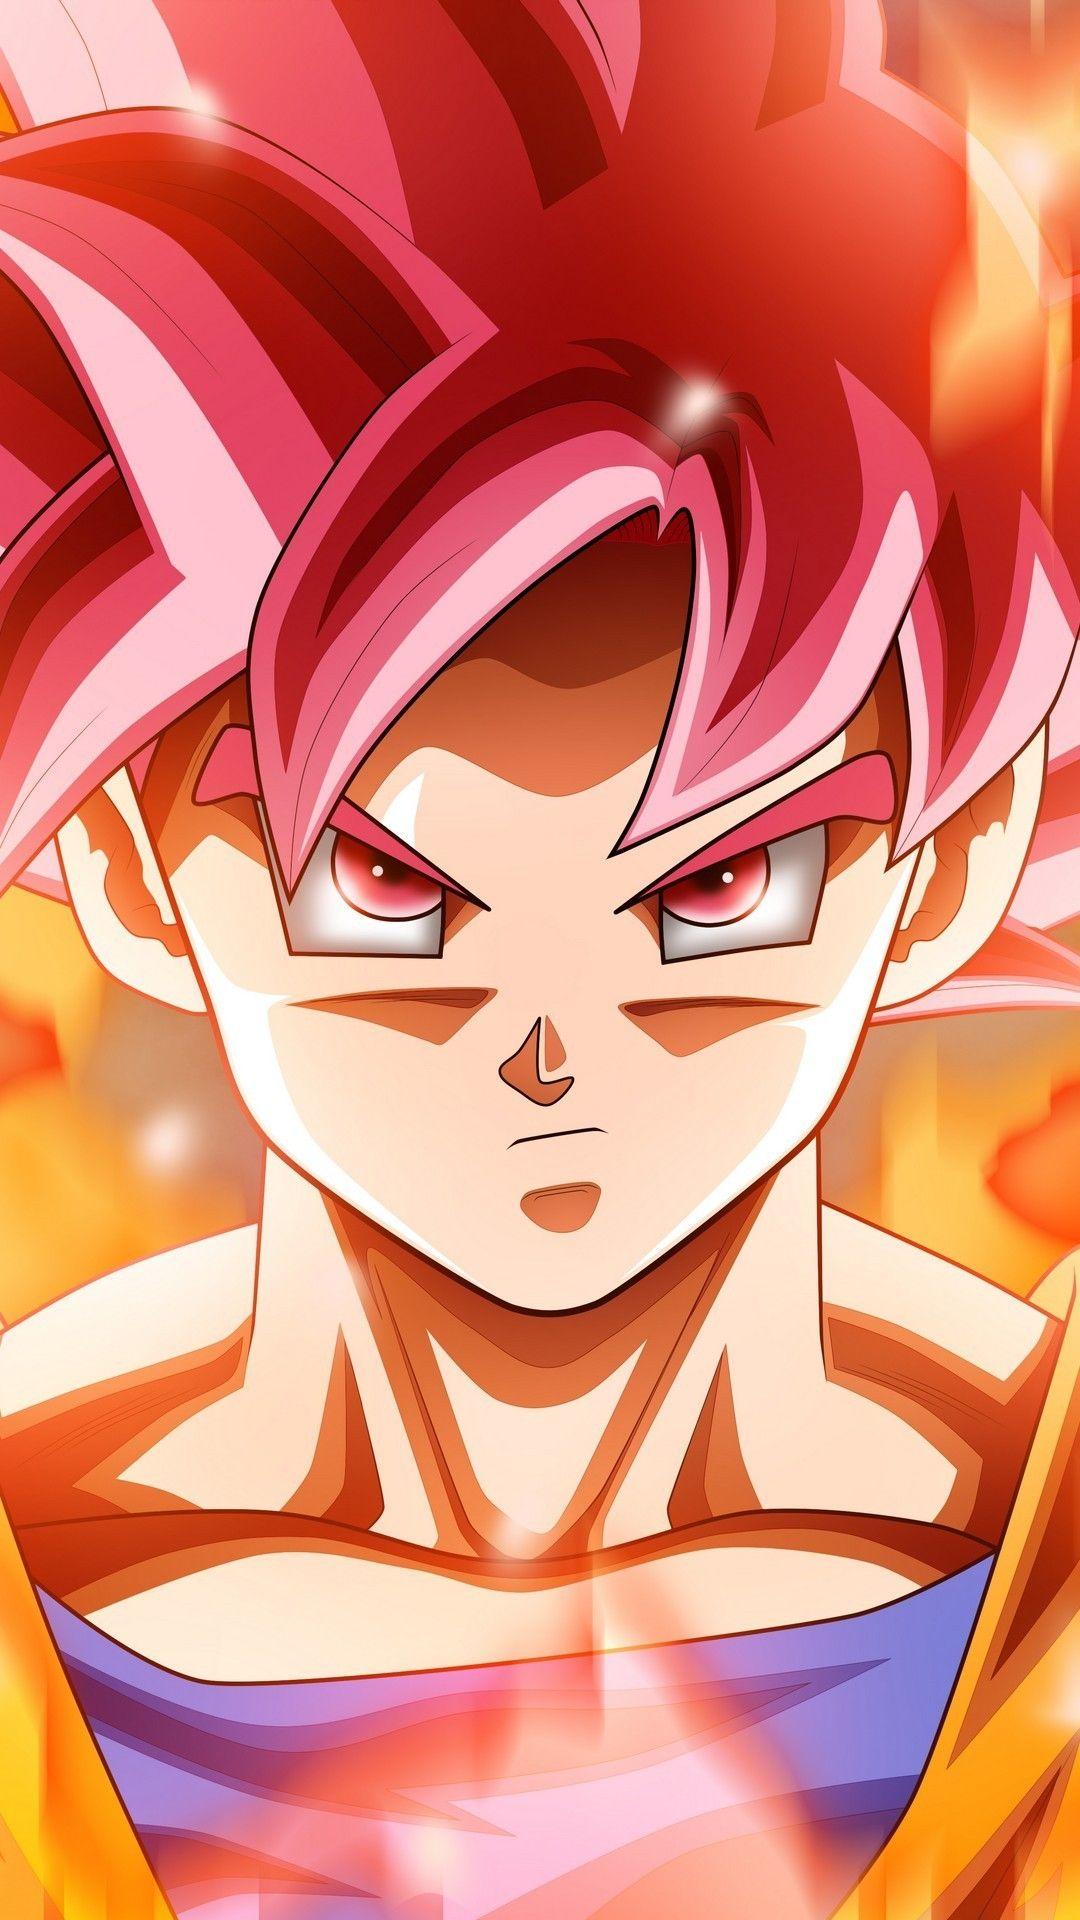 Wallpaper Android Goku Super Saiyan God Mobile